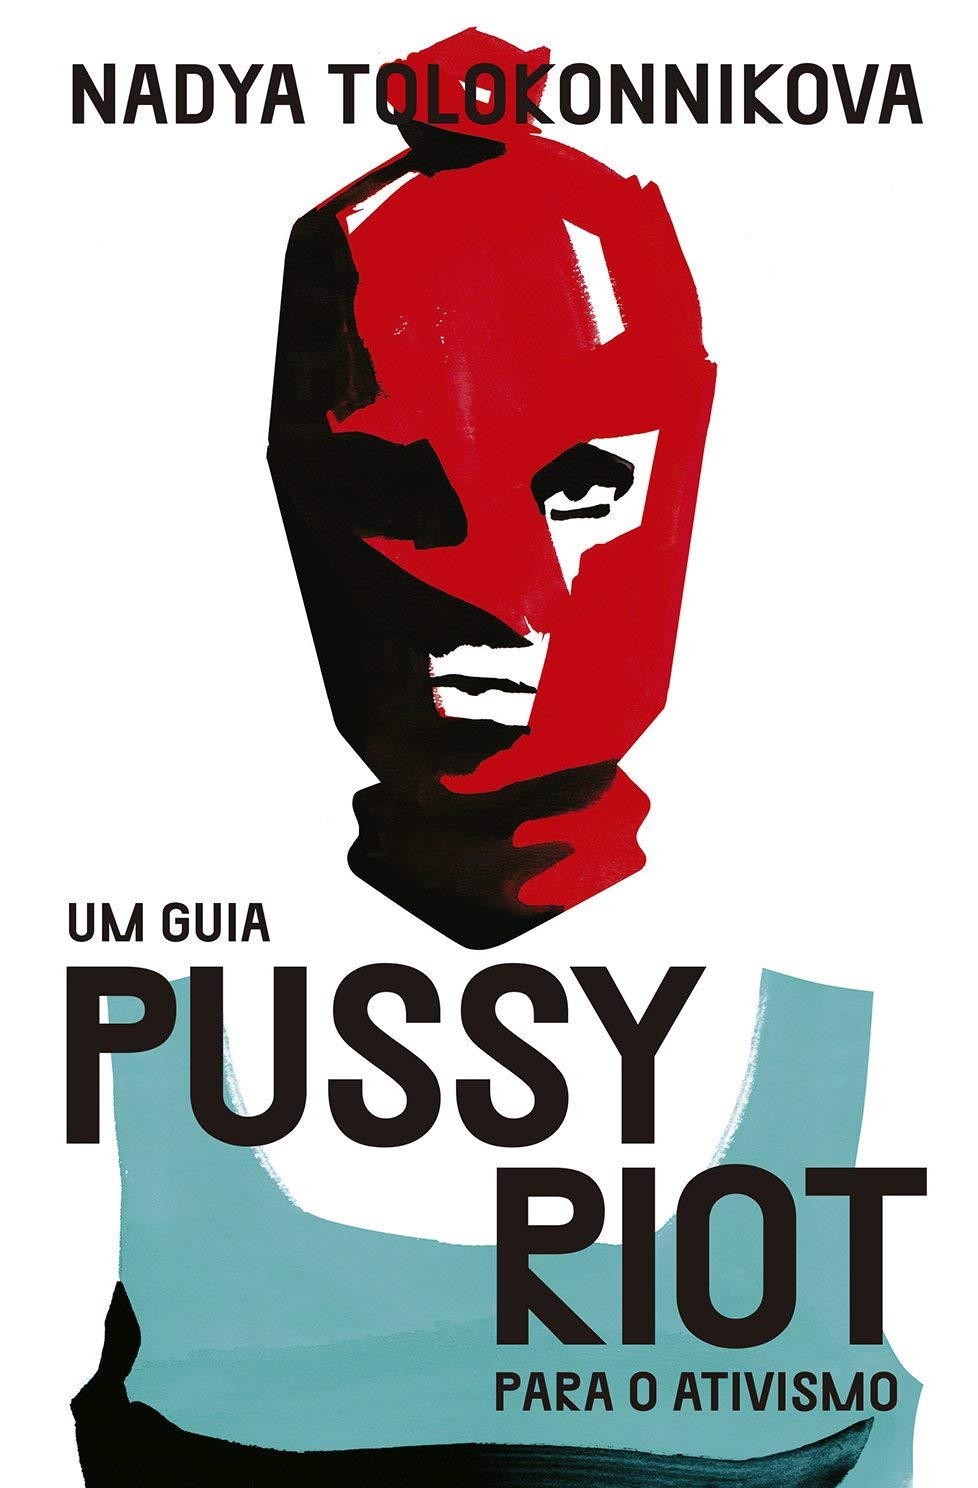 Nadya Tolokonnikova: Um Guia Pussy Riot Para o Ativismo (Paperback, português language, 2019, Ubu)